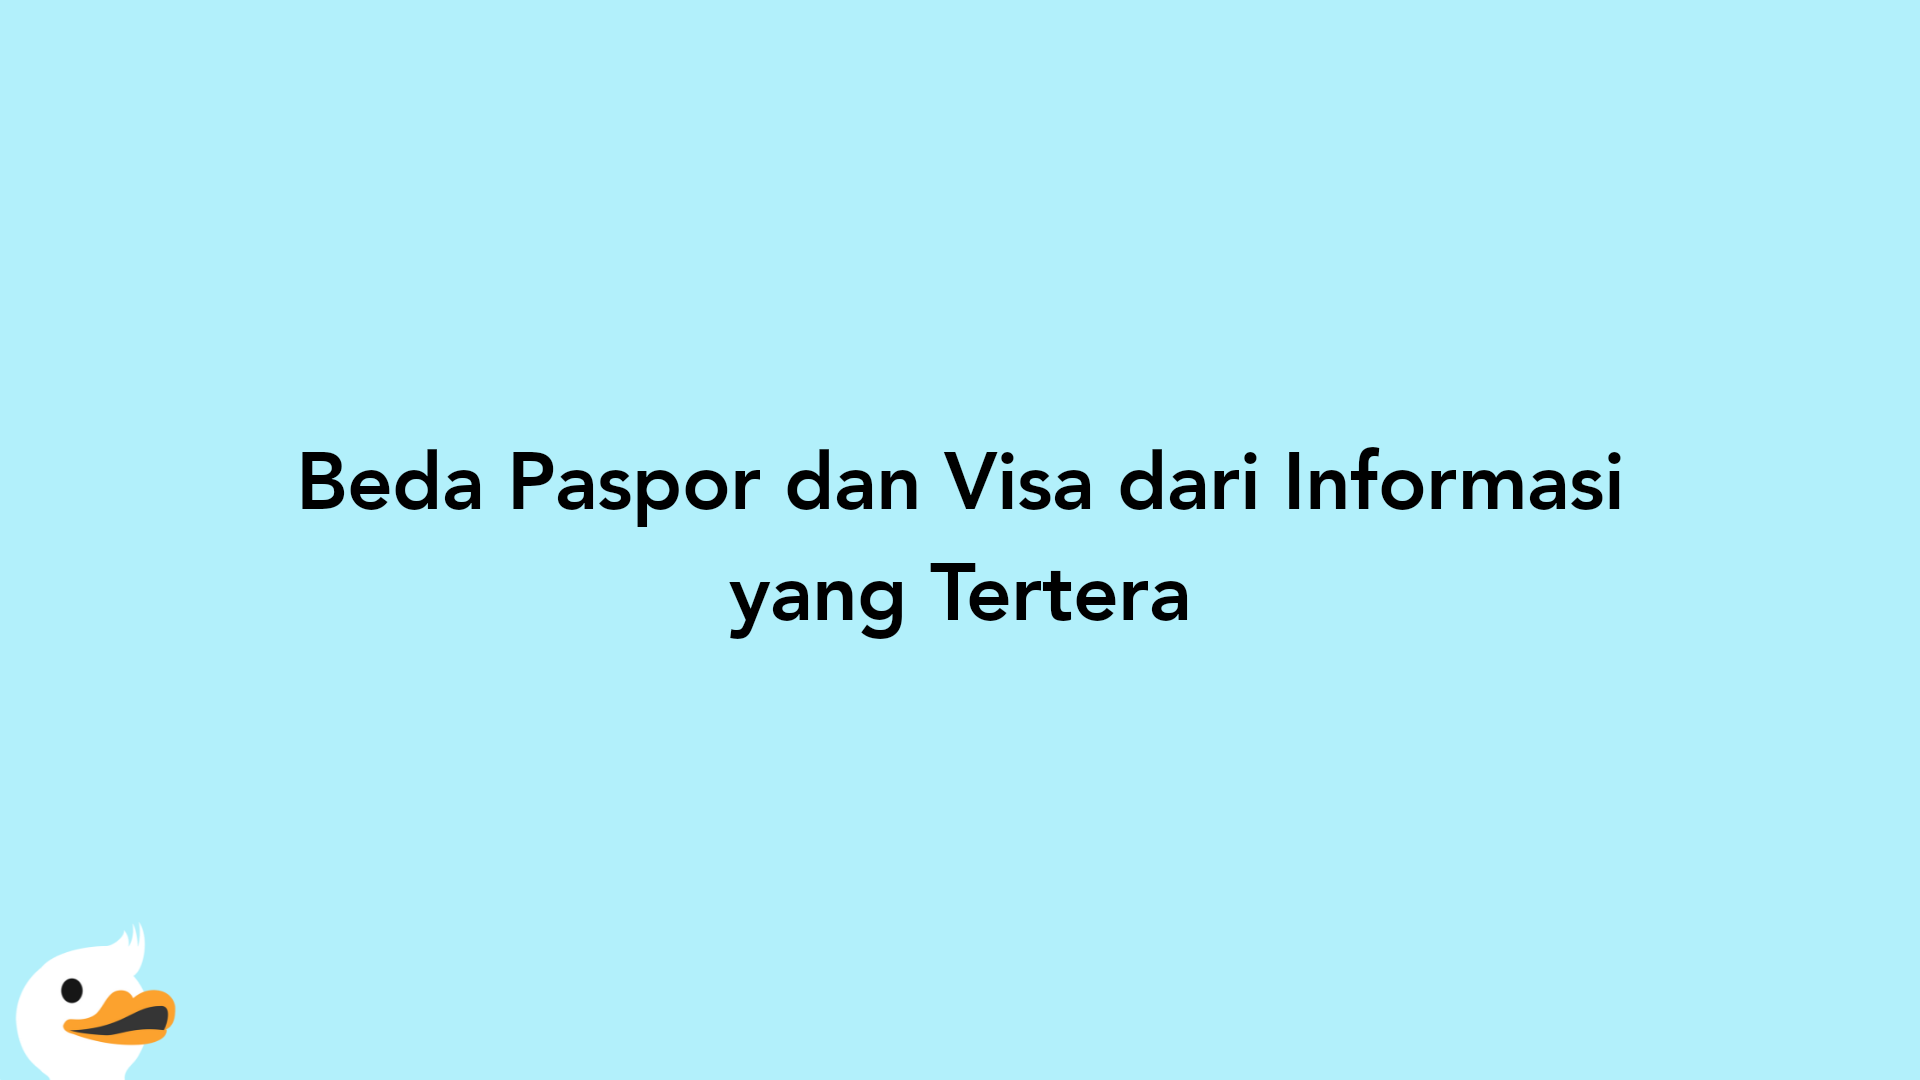 Beda Paspor dan Visa dari Informasi yang Tertera